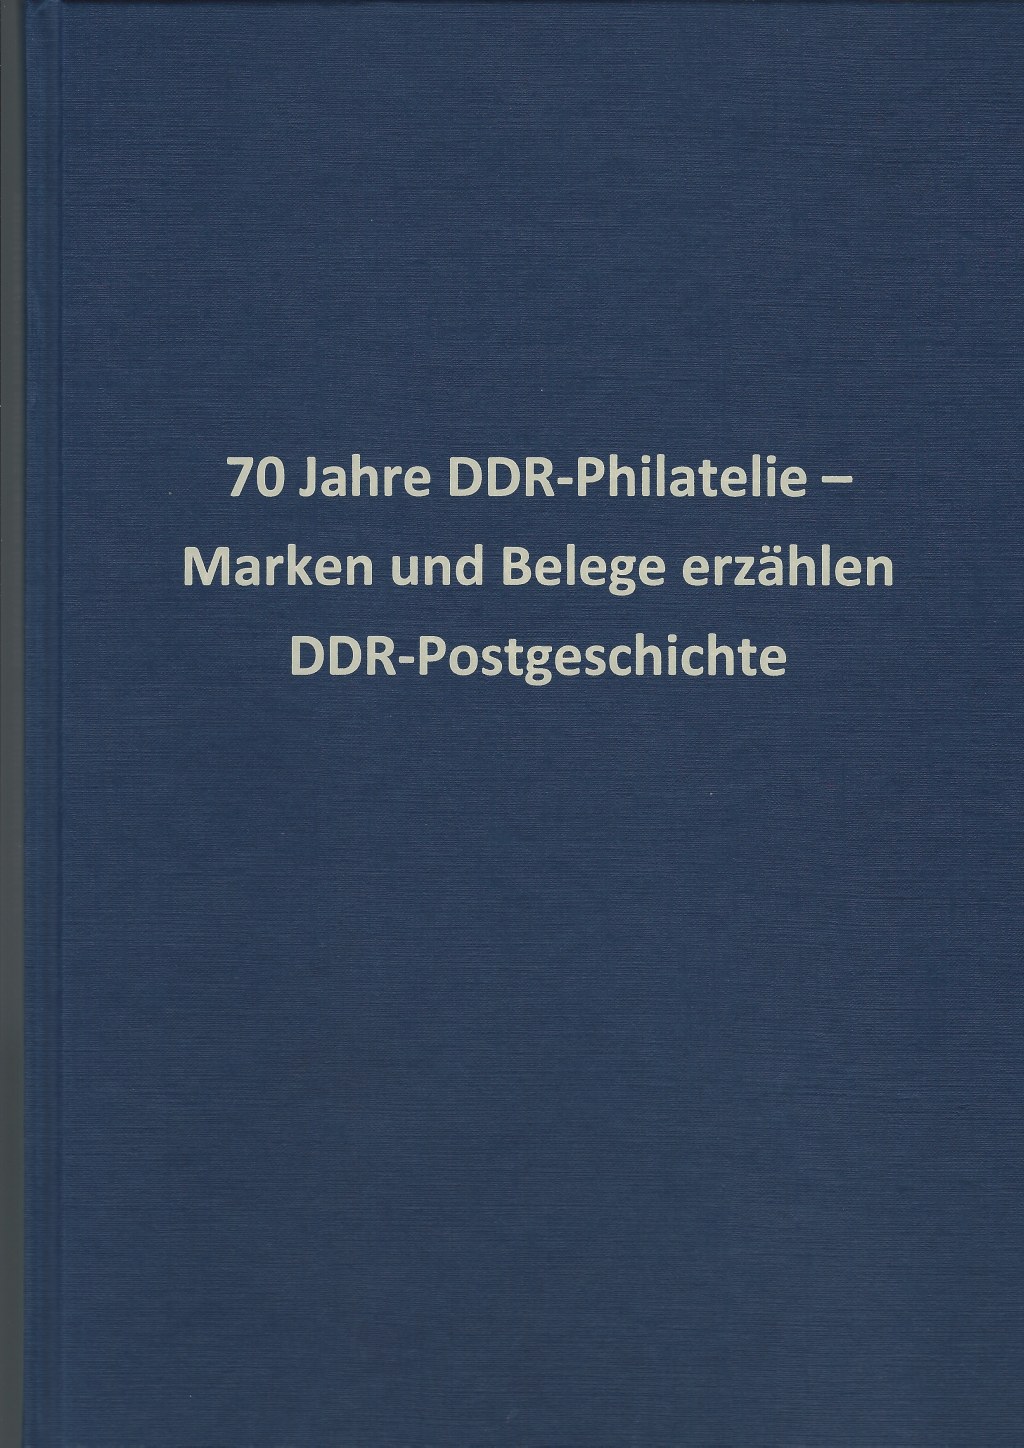 DDR Philatelie Symposium 70 Jahre Festschrift